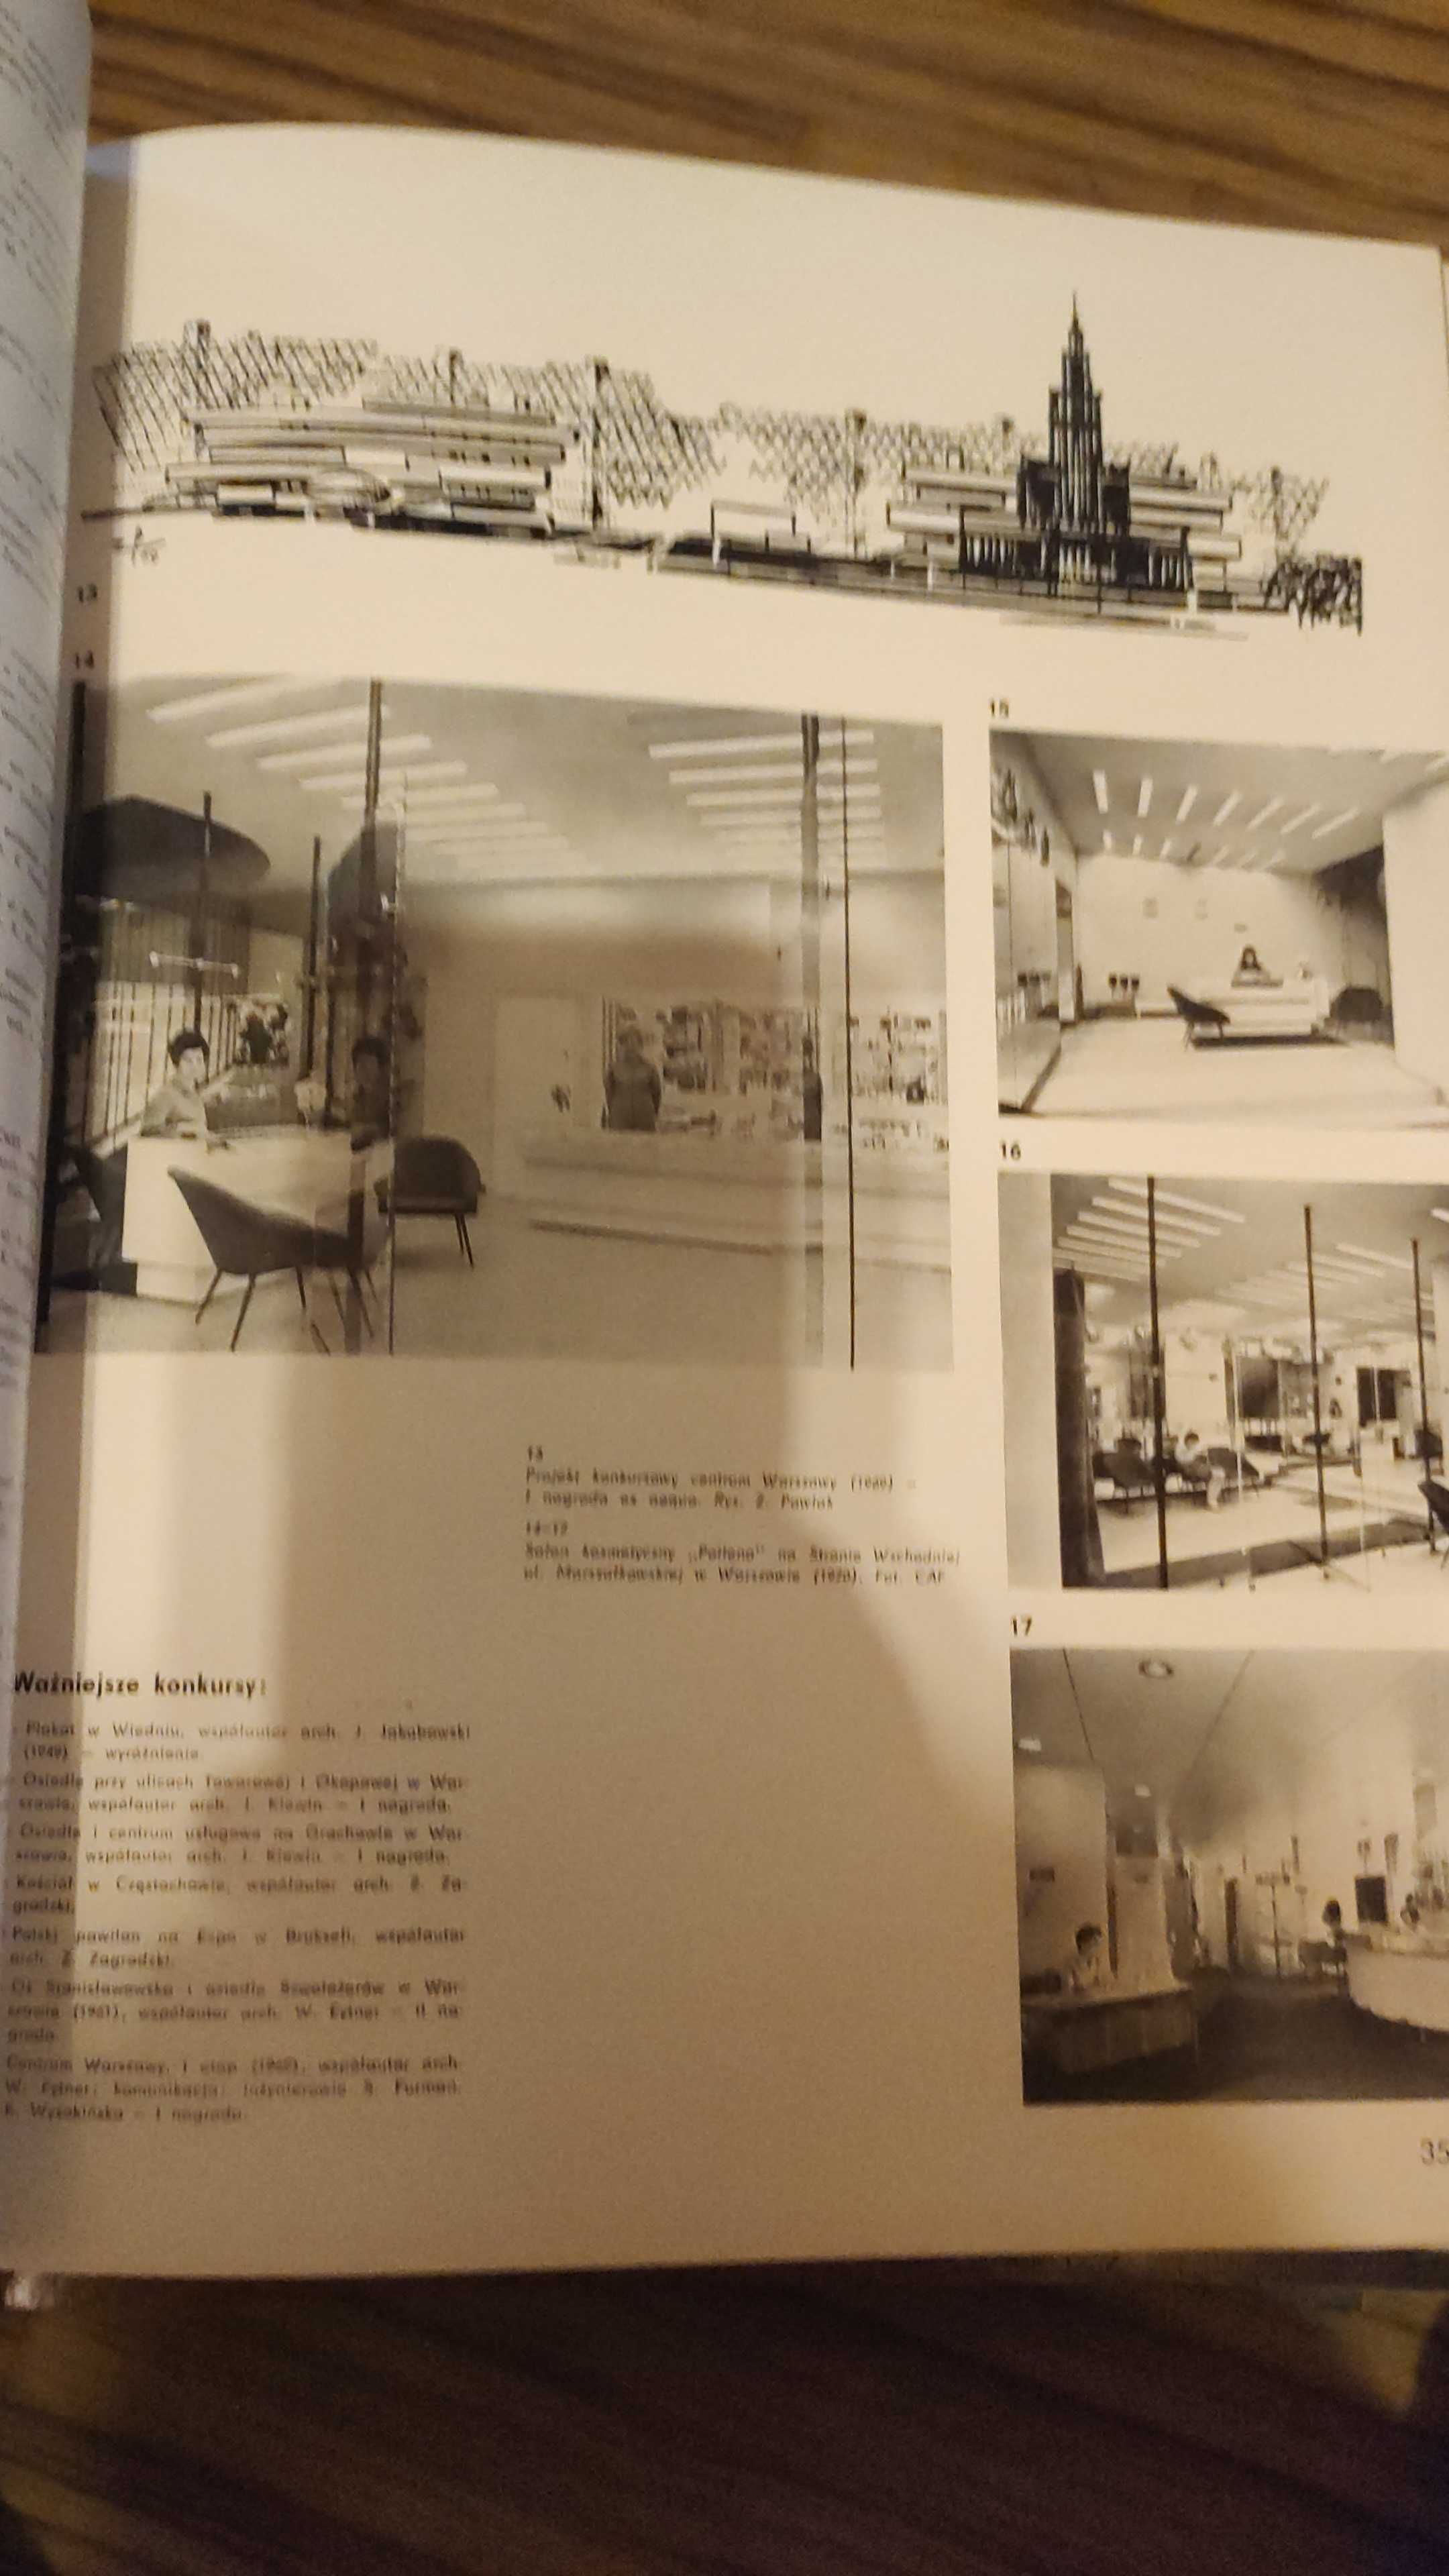 czasopismo ARCHITEKTURA 1964 - 1994 archiwalne numery - całe roczniki